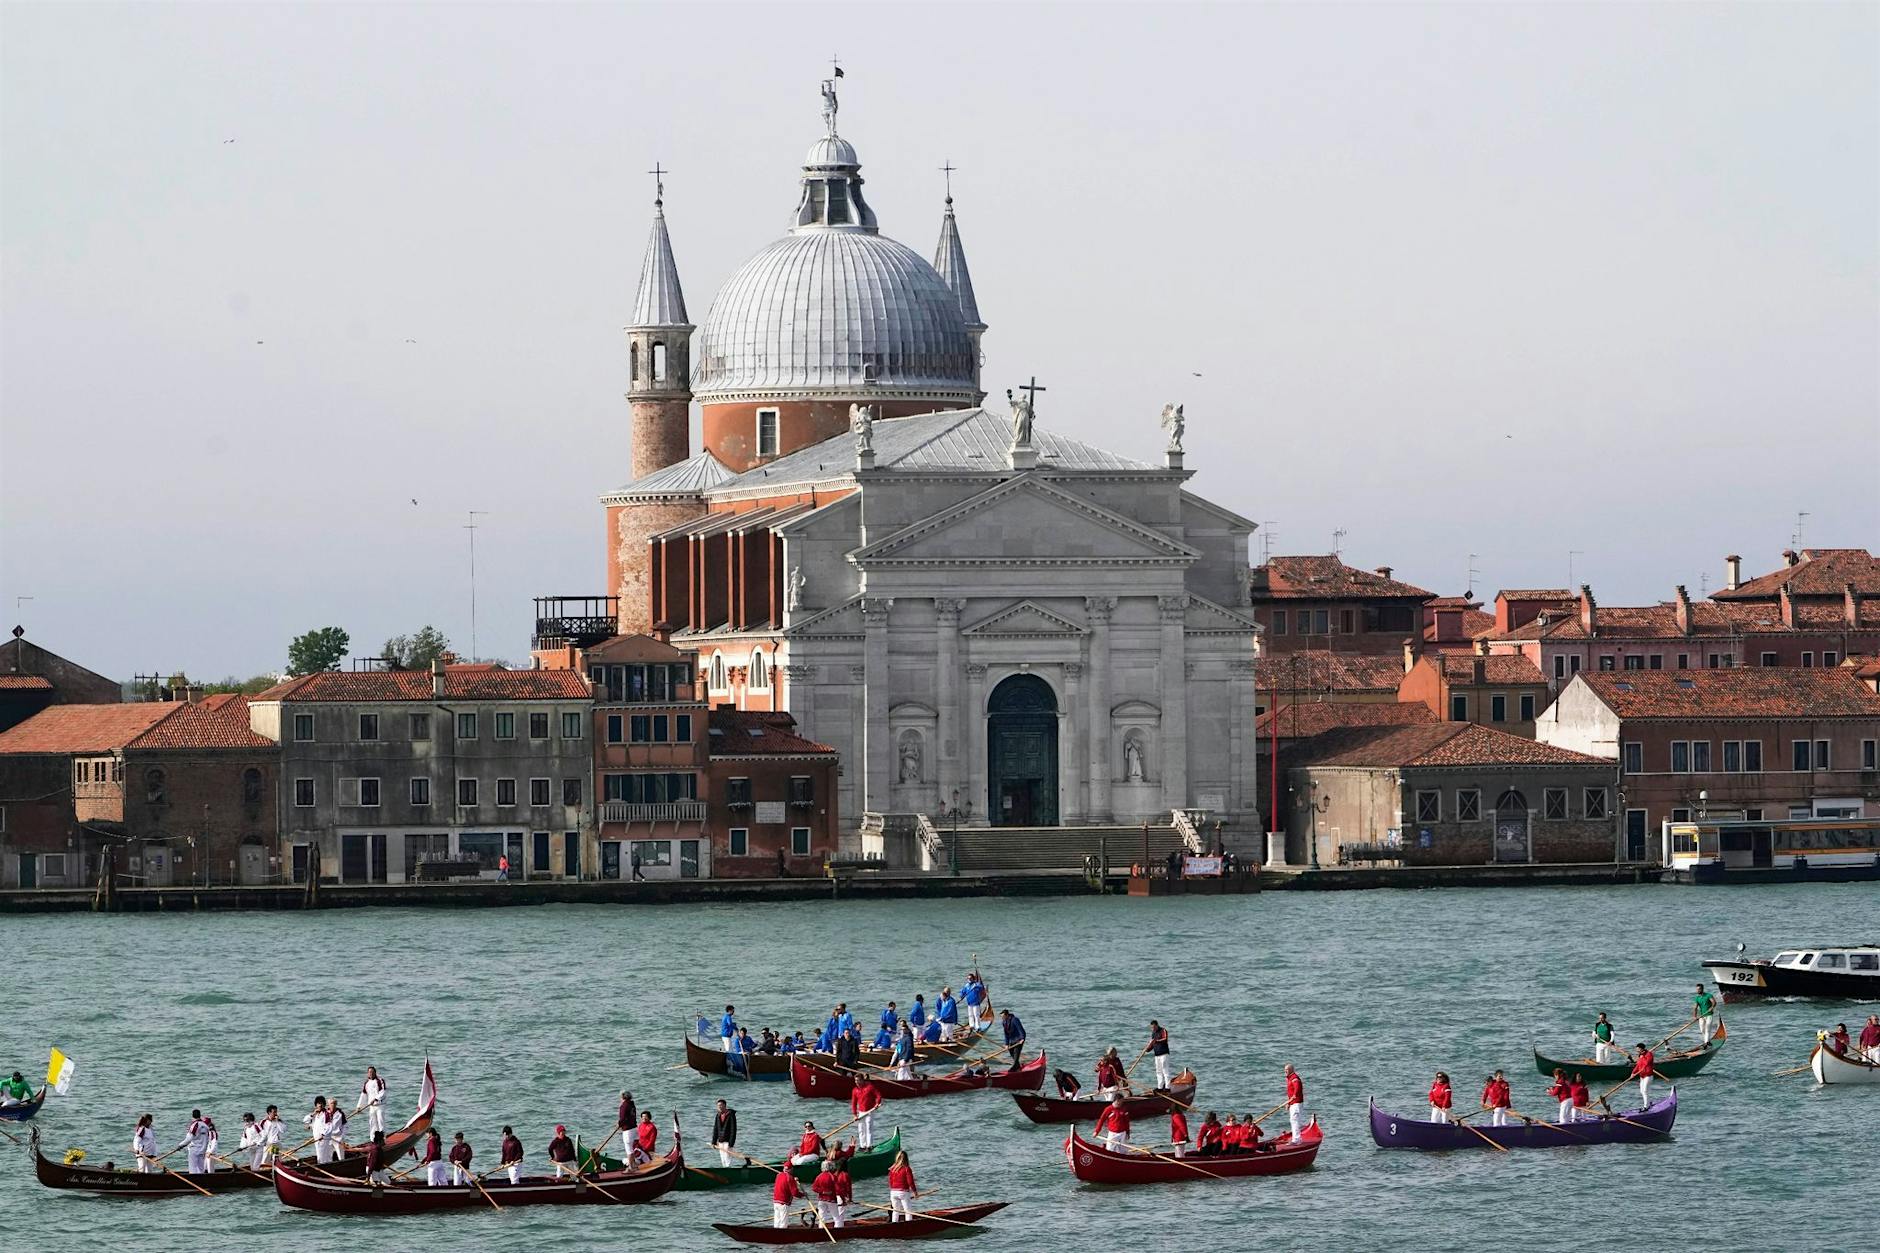 Venedig-Ticket: In einer Woche erwartete Einnahmen von sieben Monaten erreicht